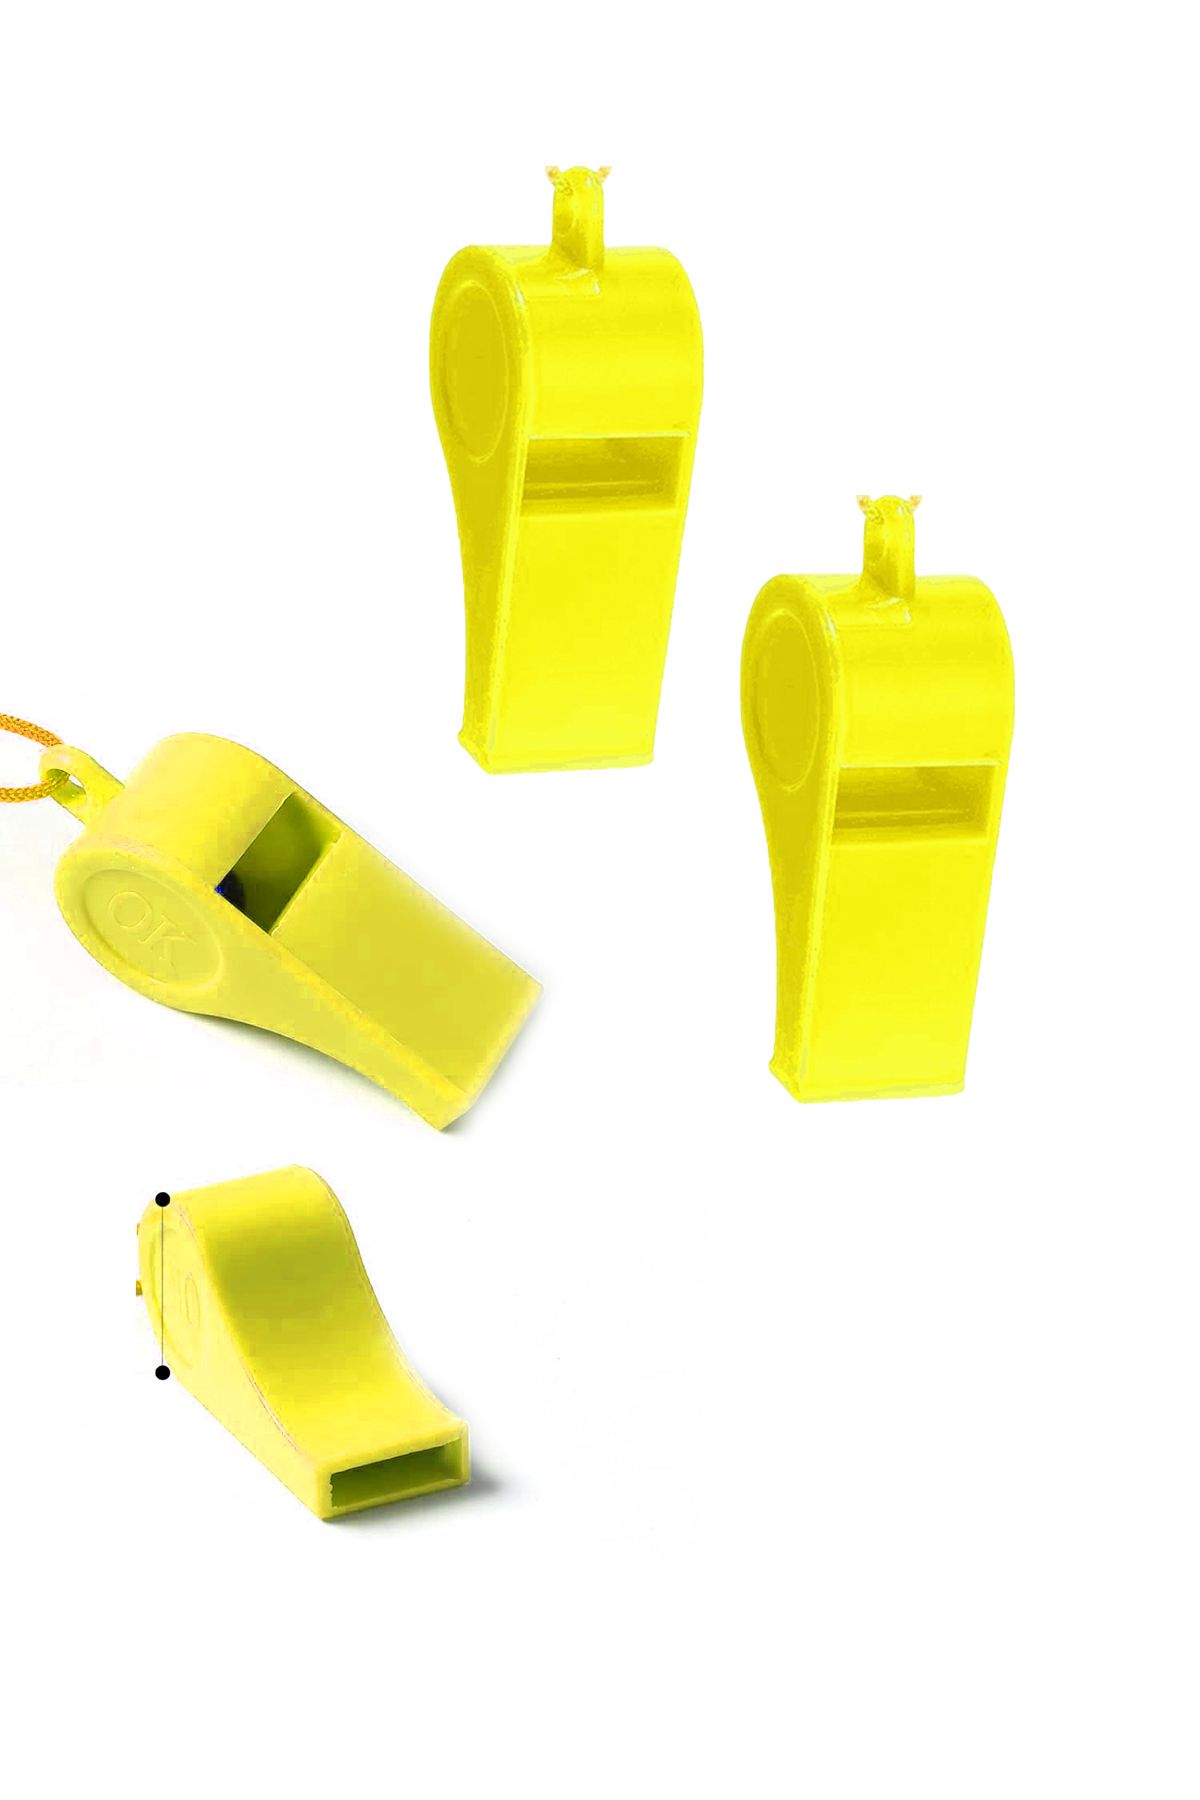 Toyaş Sarı Plastik Düdük, 2 Adet İpli Yüksek Sesli Hakem Düdüğü Hediyelik Parti Düdükleri